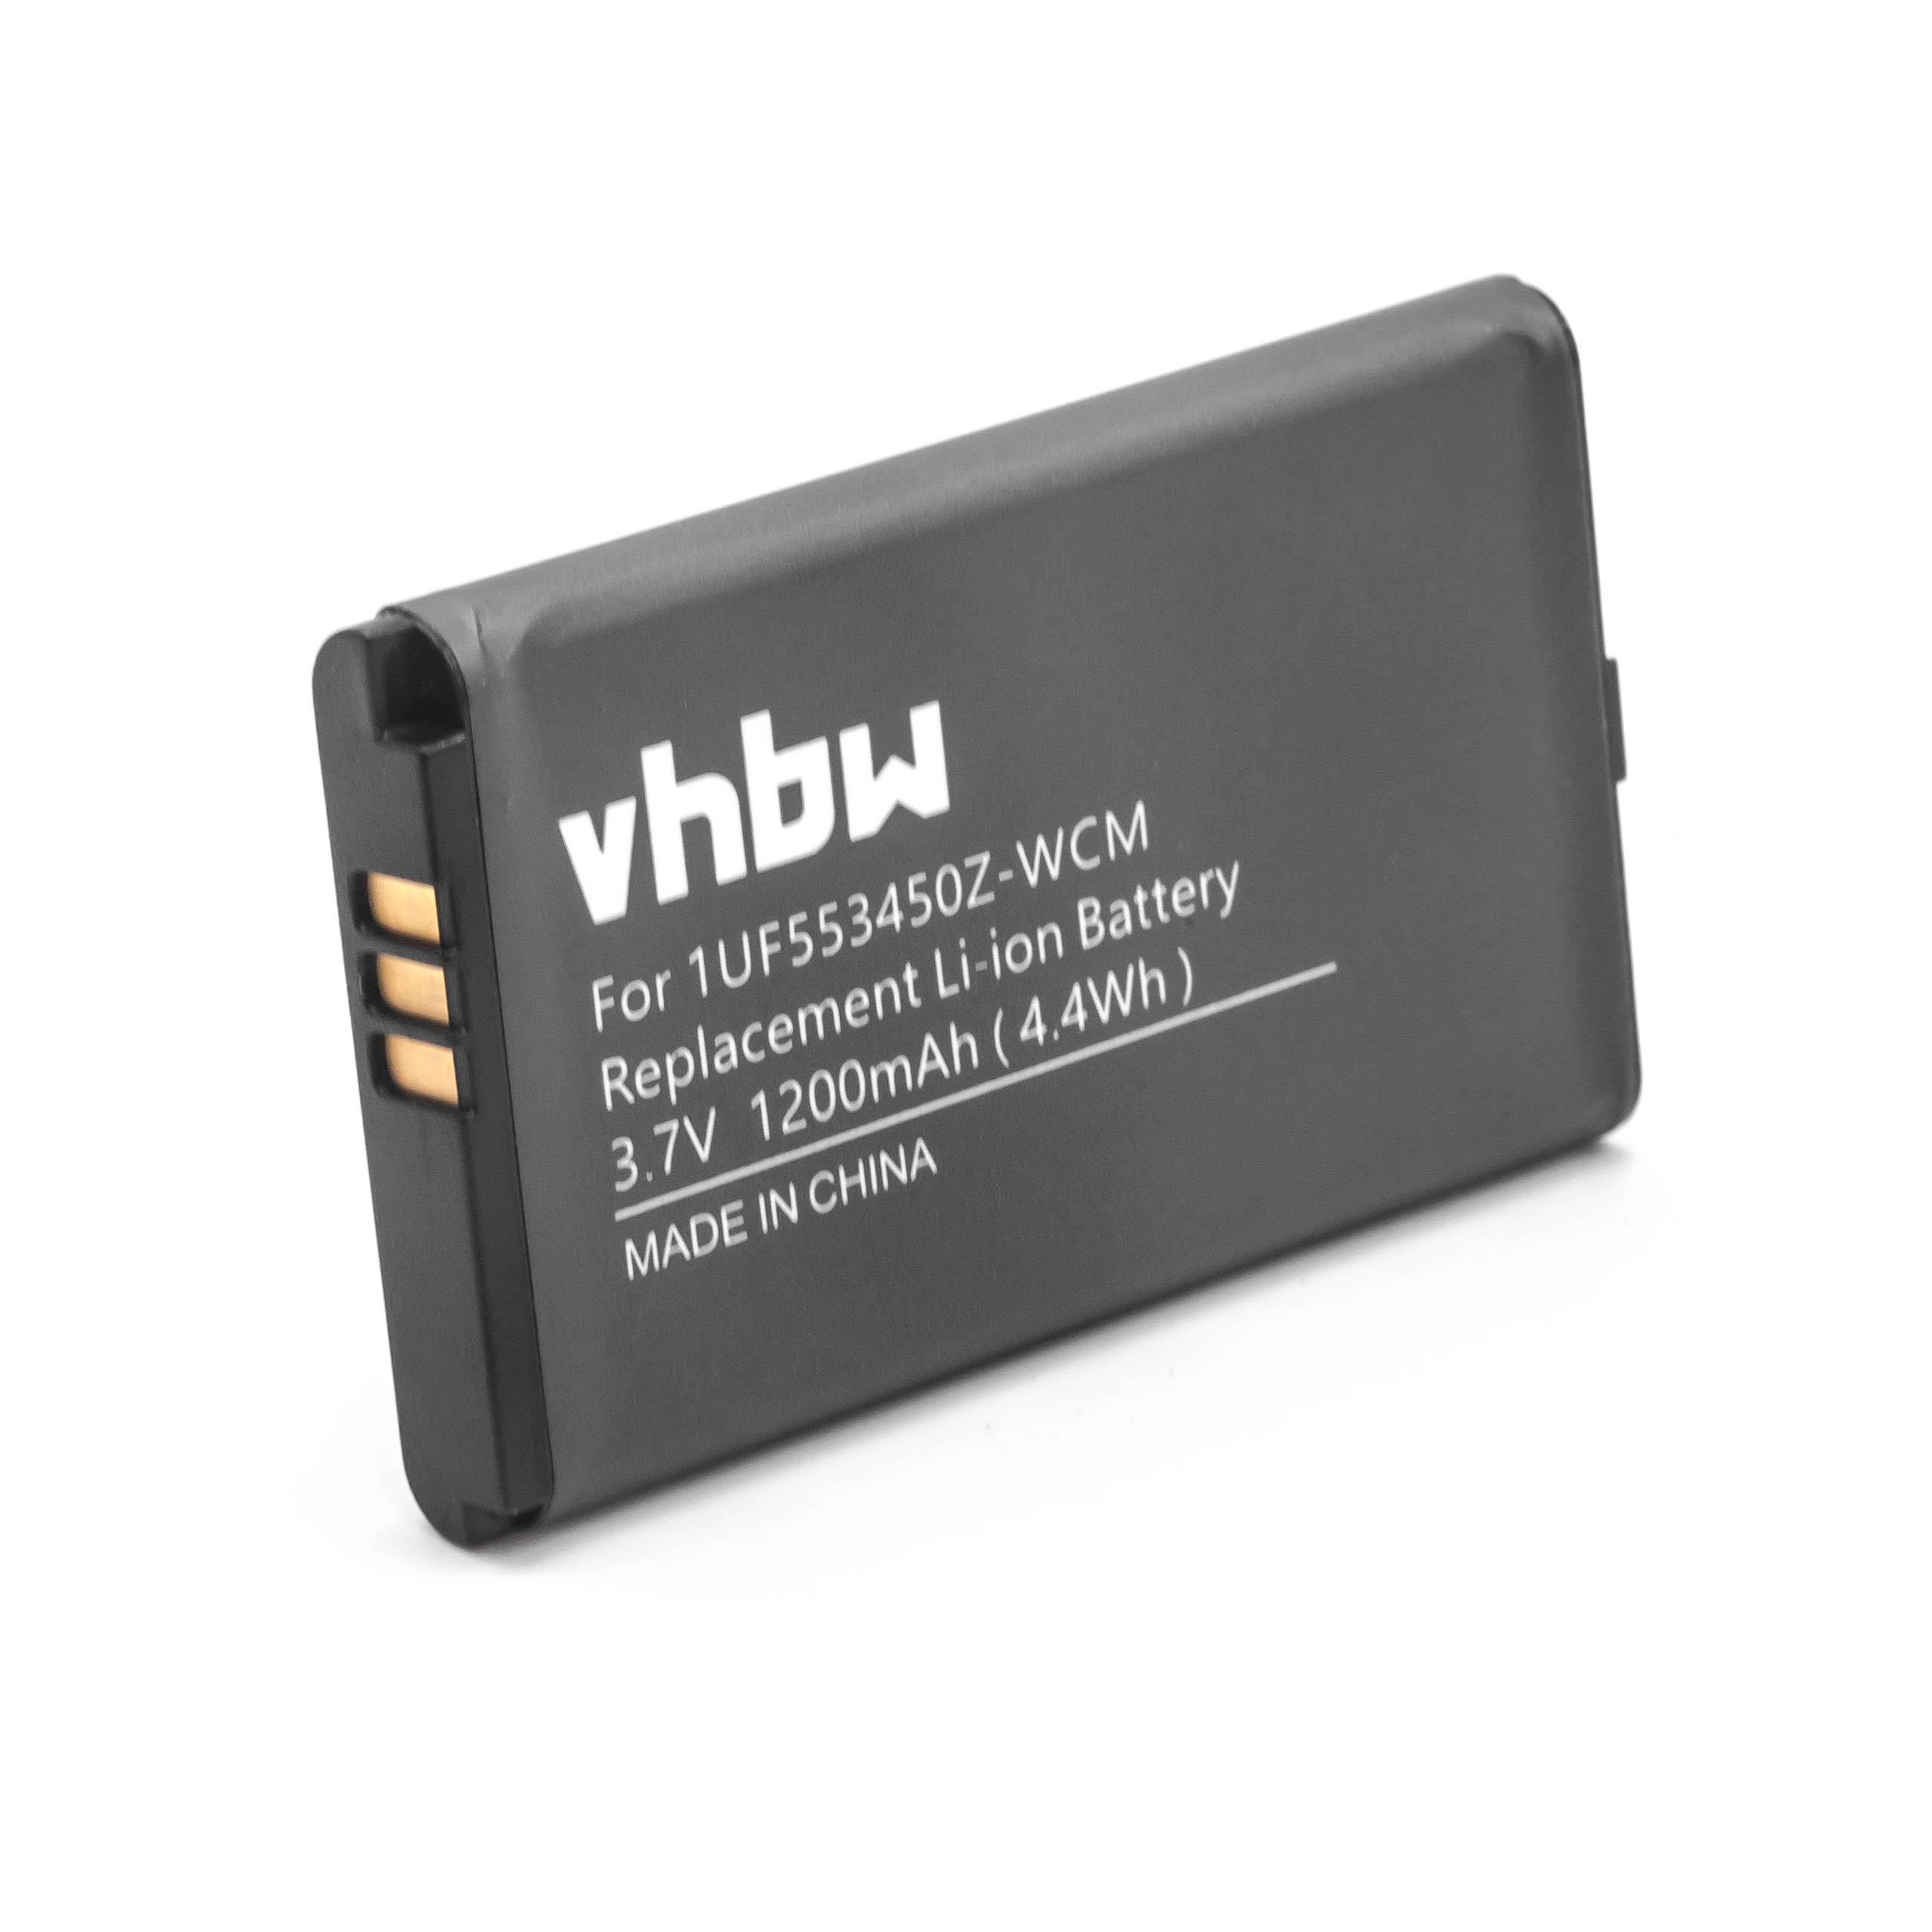 Batterie remplace 1UF553450Z-WCM pour tablette - 1200mAh 3,7V Li-ion